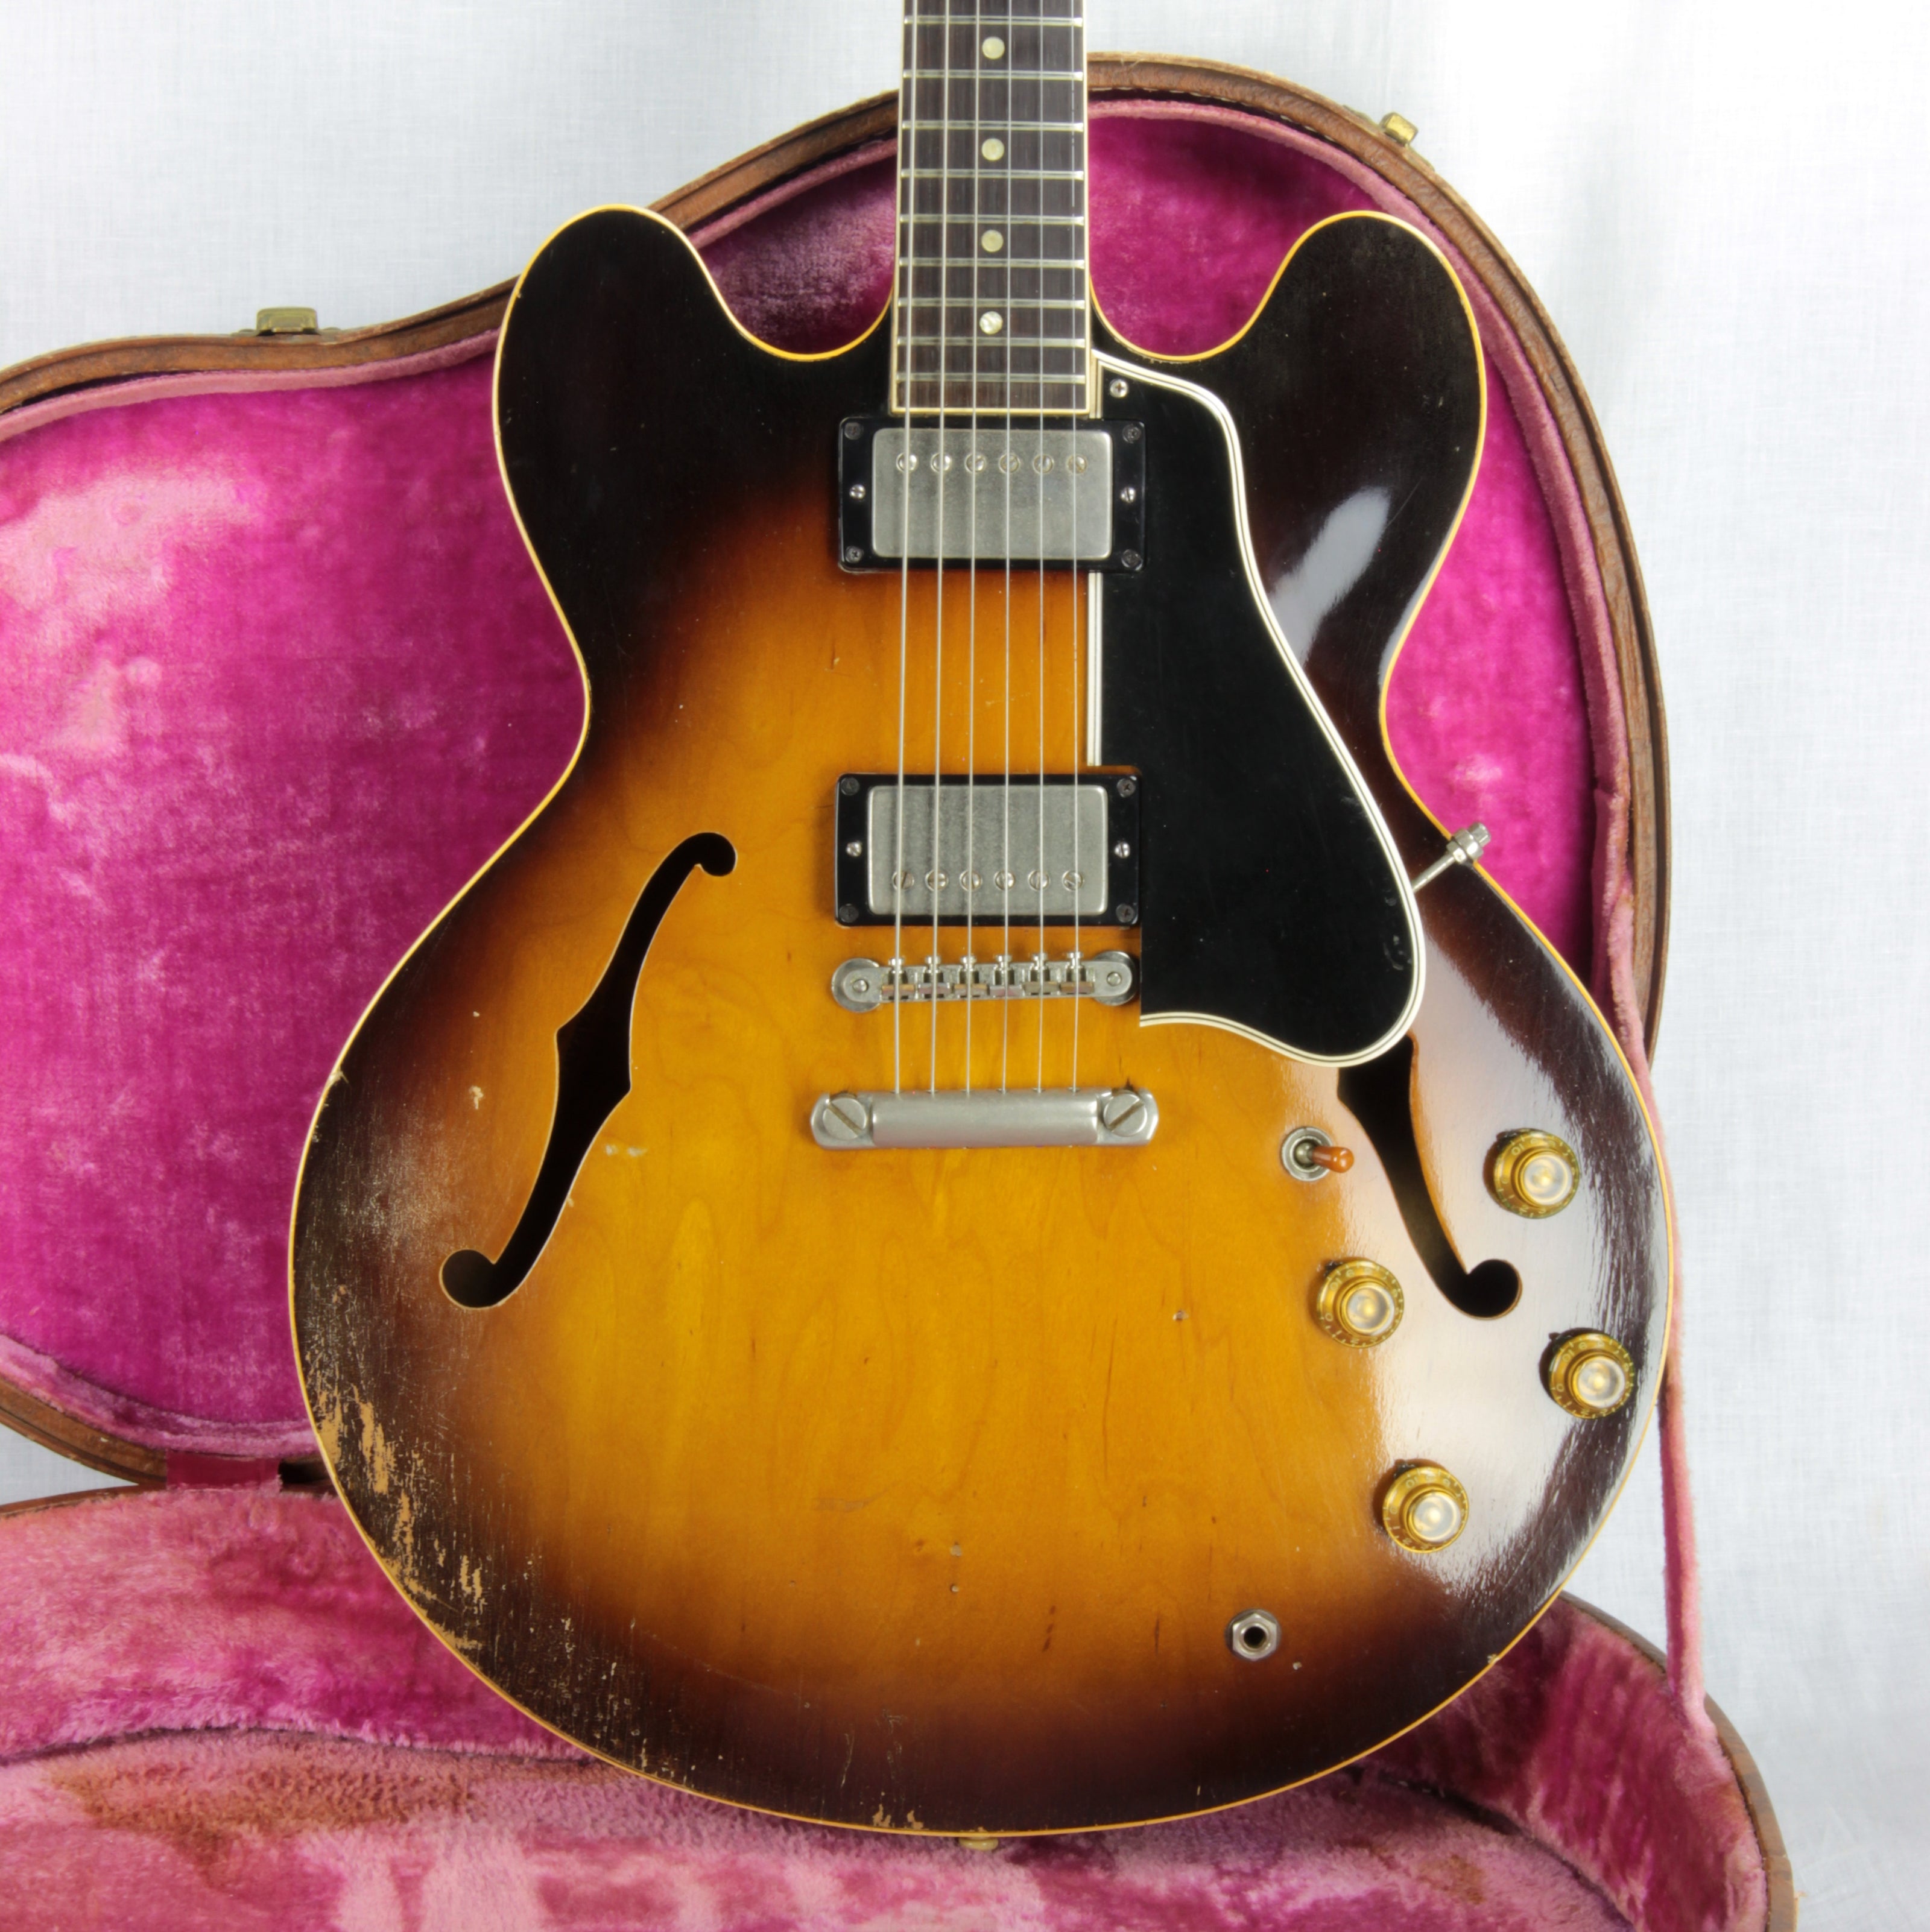 Late 1958 Gibson ES-335 in worn Sunburst finish